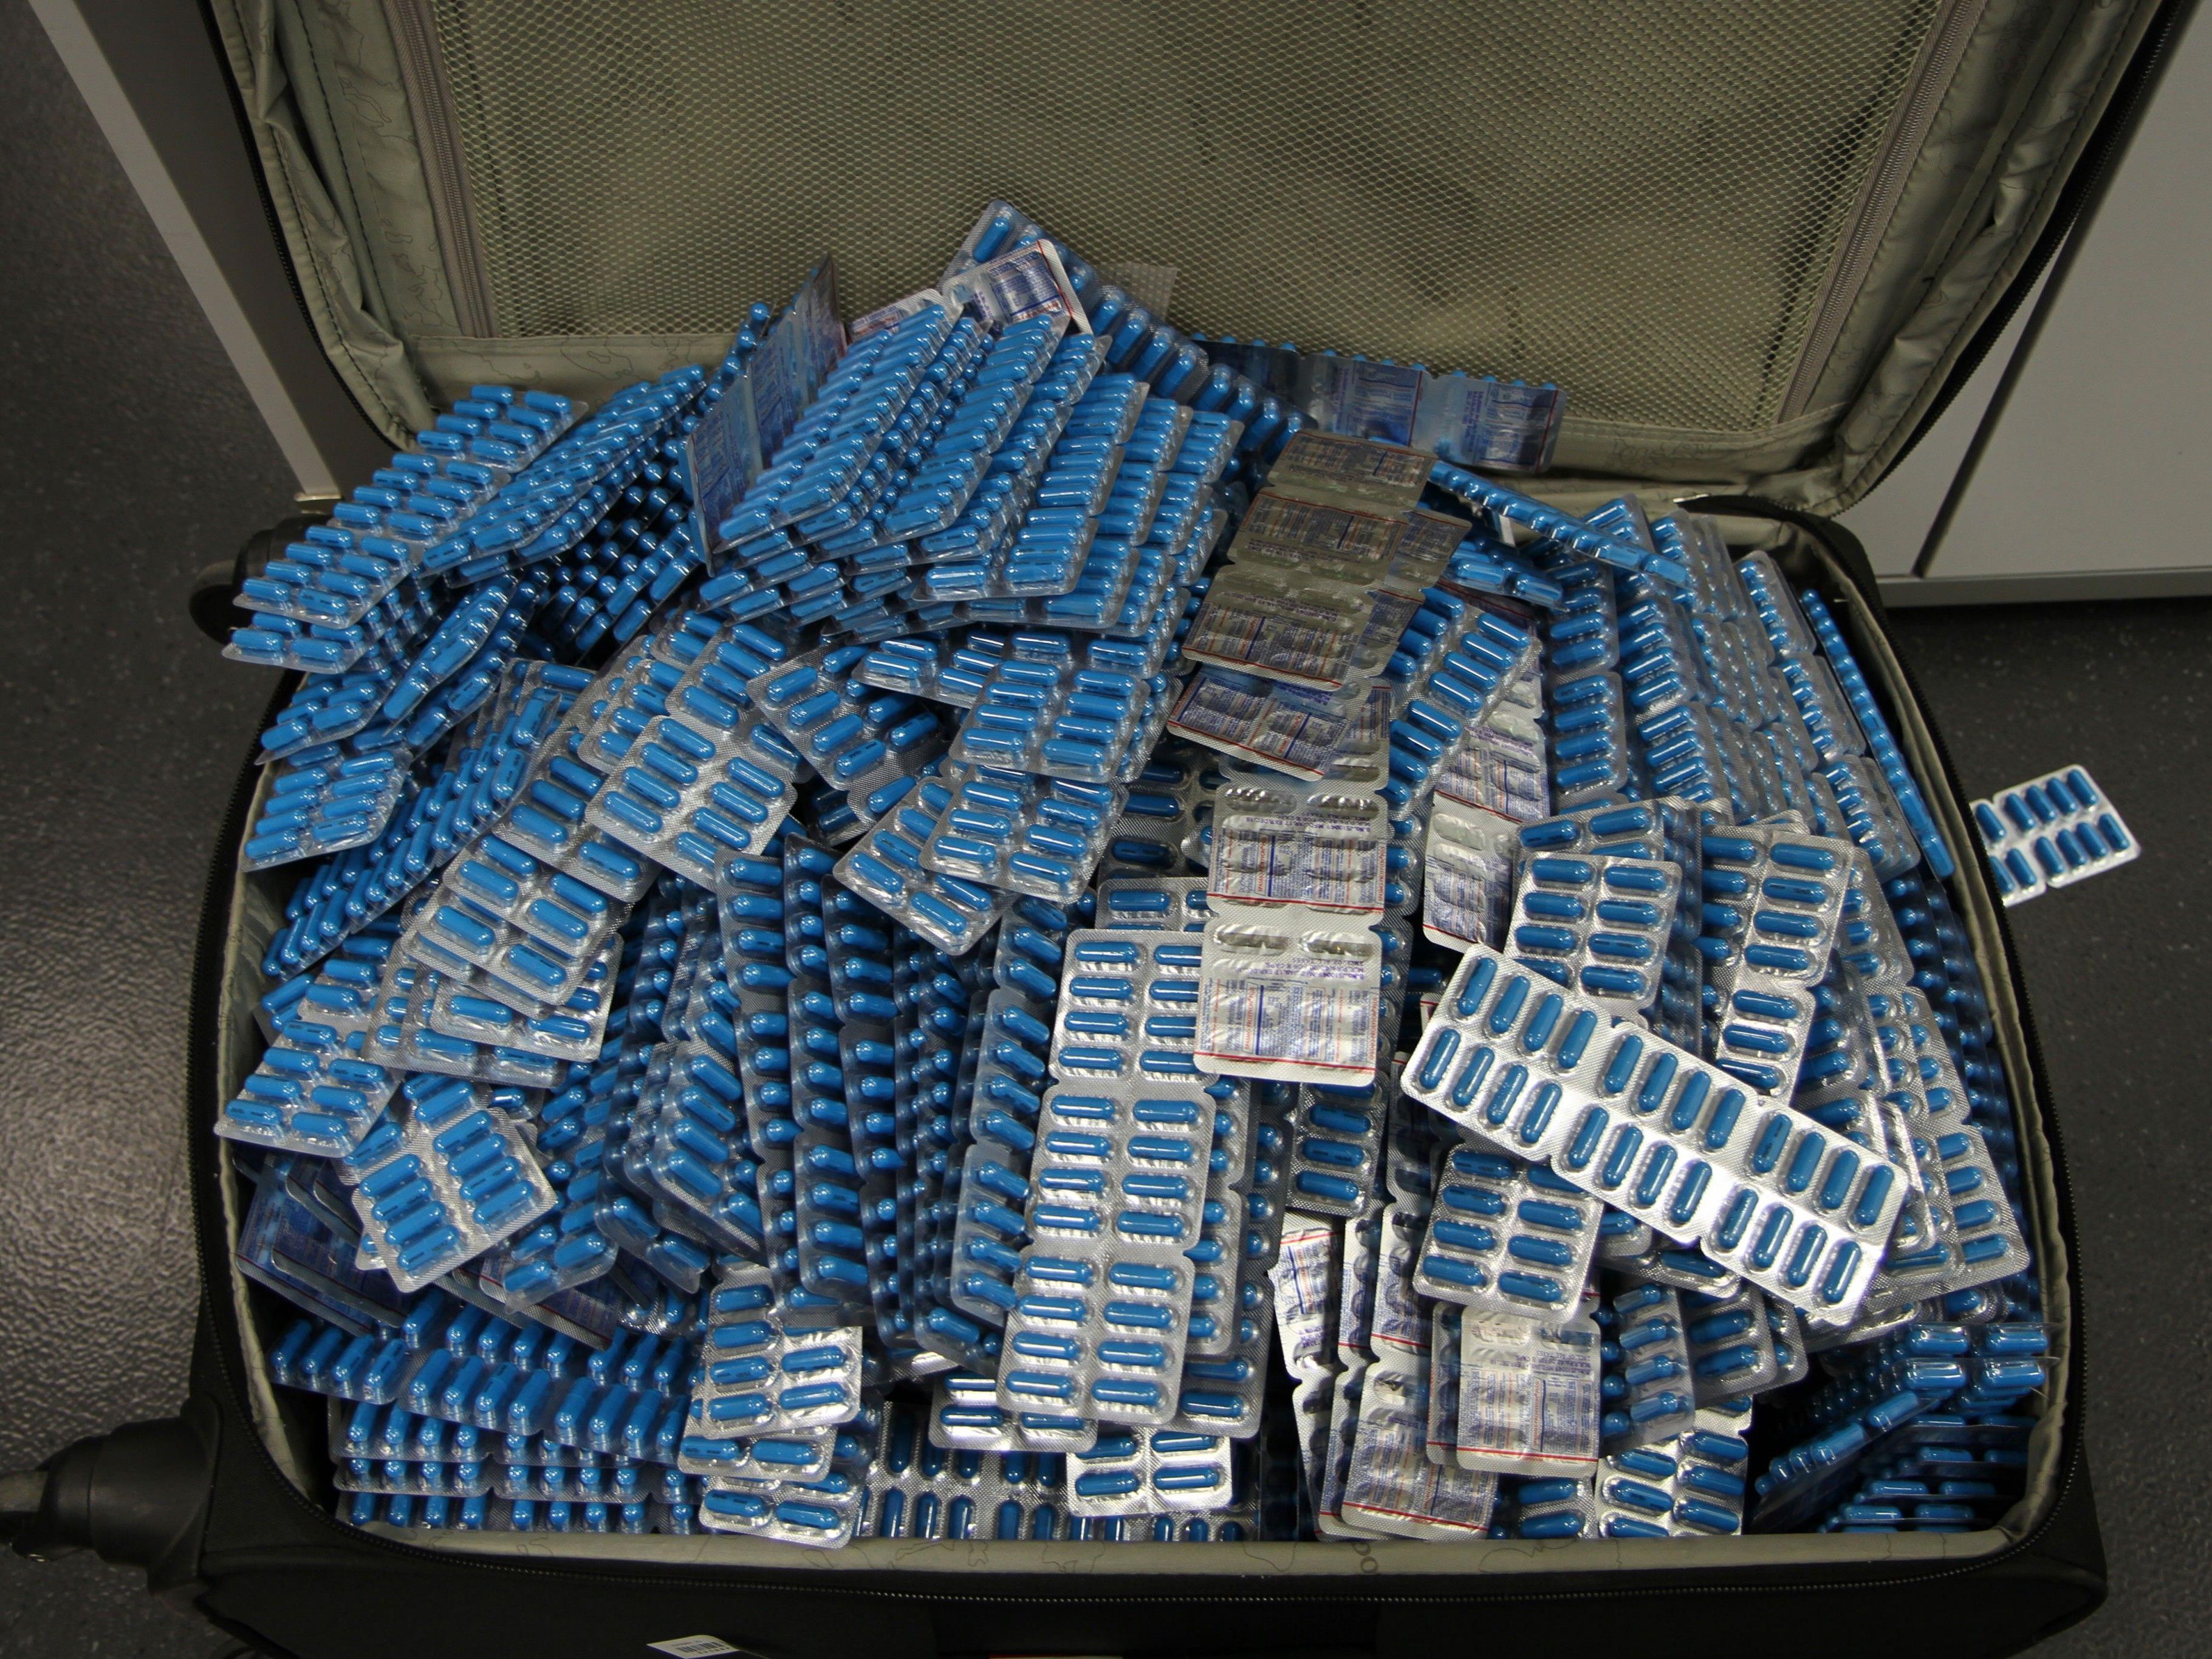 43.000 Stück eines in Indien hergestellten Schmerzmittels aus dem Verkehr gezogen